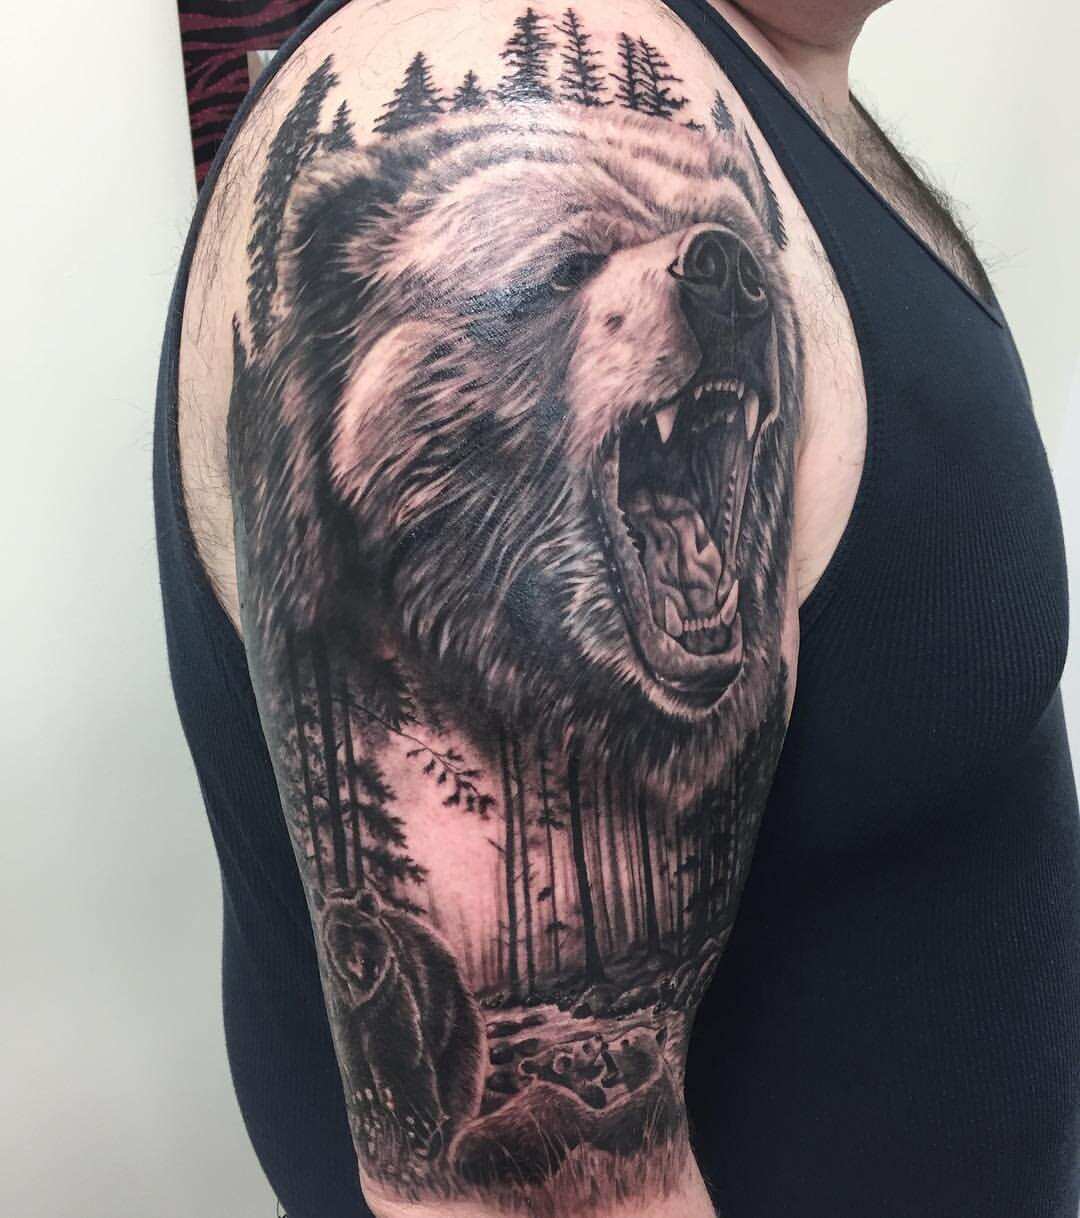 Gavin Clarke Tattoos on Twitter Todays bear tattoo i did tattoo  beartattoo wildlife obsession ipswichtattoo ipswich artist  httpstcoTLpoeyRmQx  Twitter